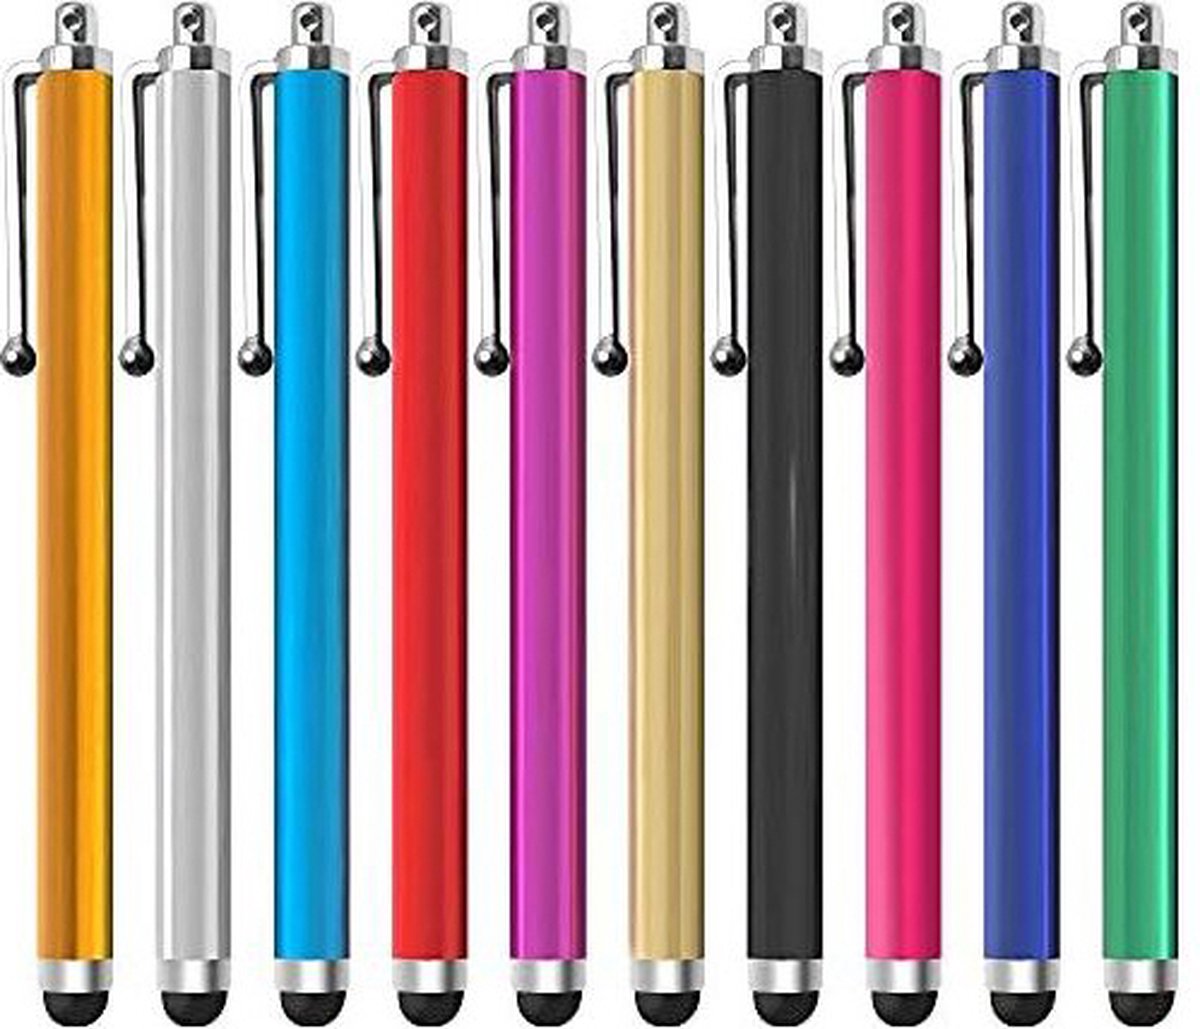 Stylus Pen I Capacitieve Stylus Pen I Universeler Stylus I Geschikt Voor Alle Smartphones En Tablets I 1 Stuk I Zwart